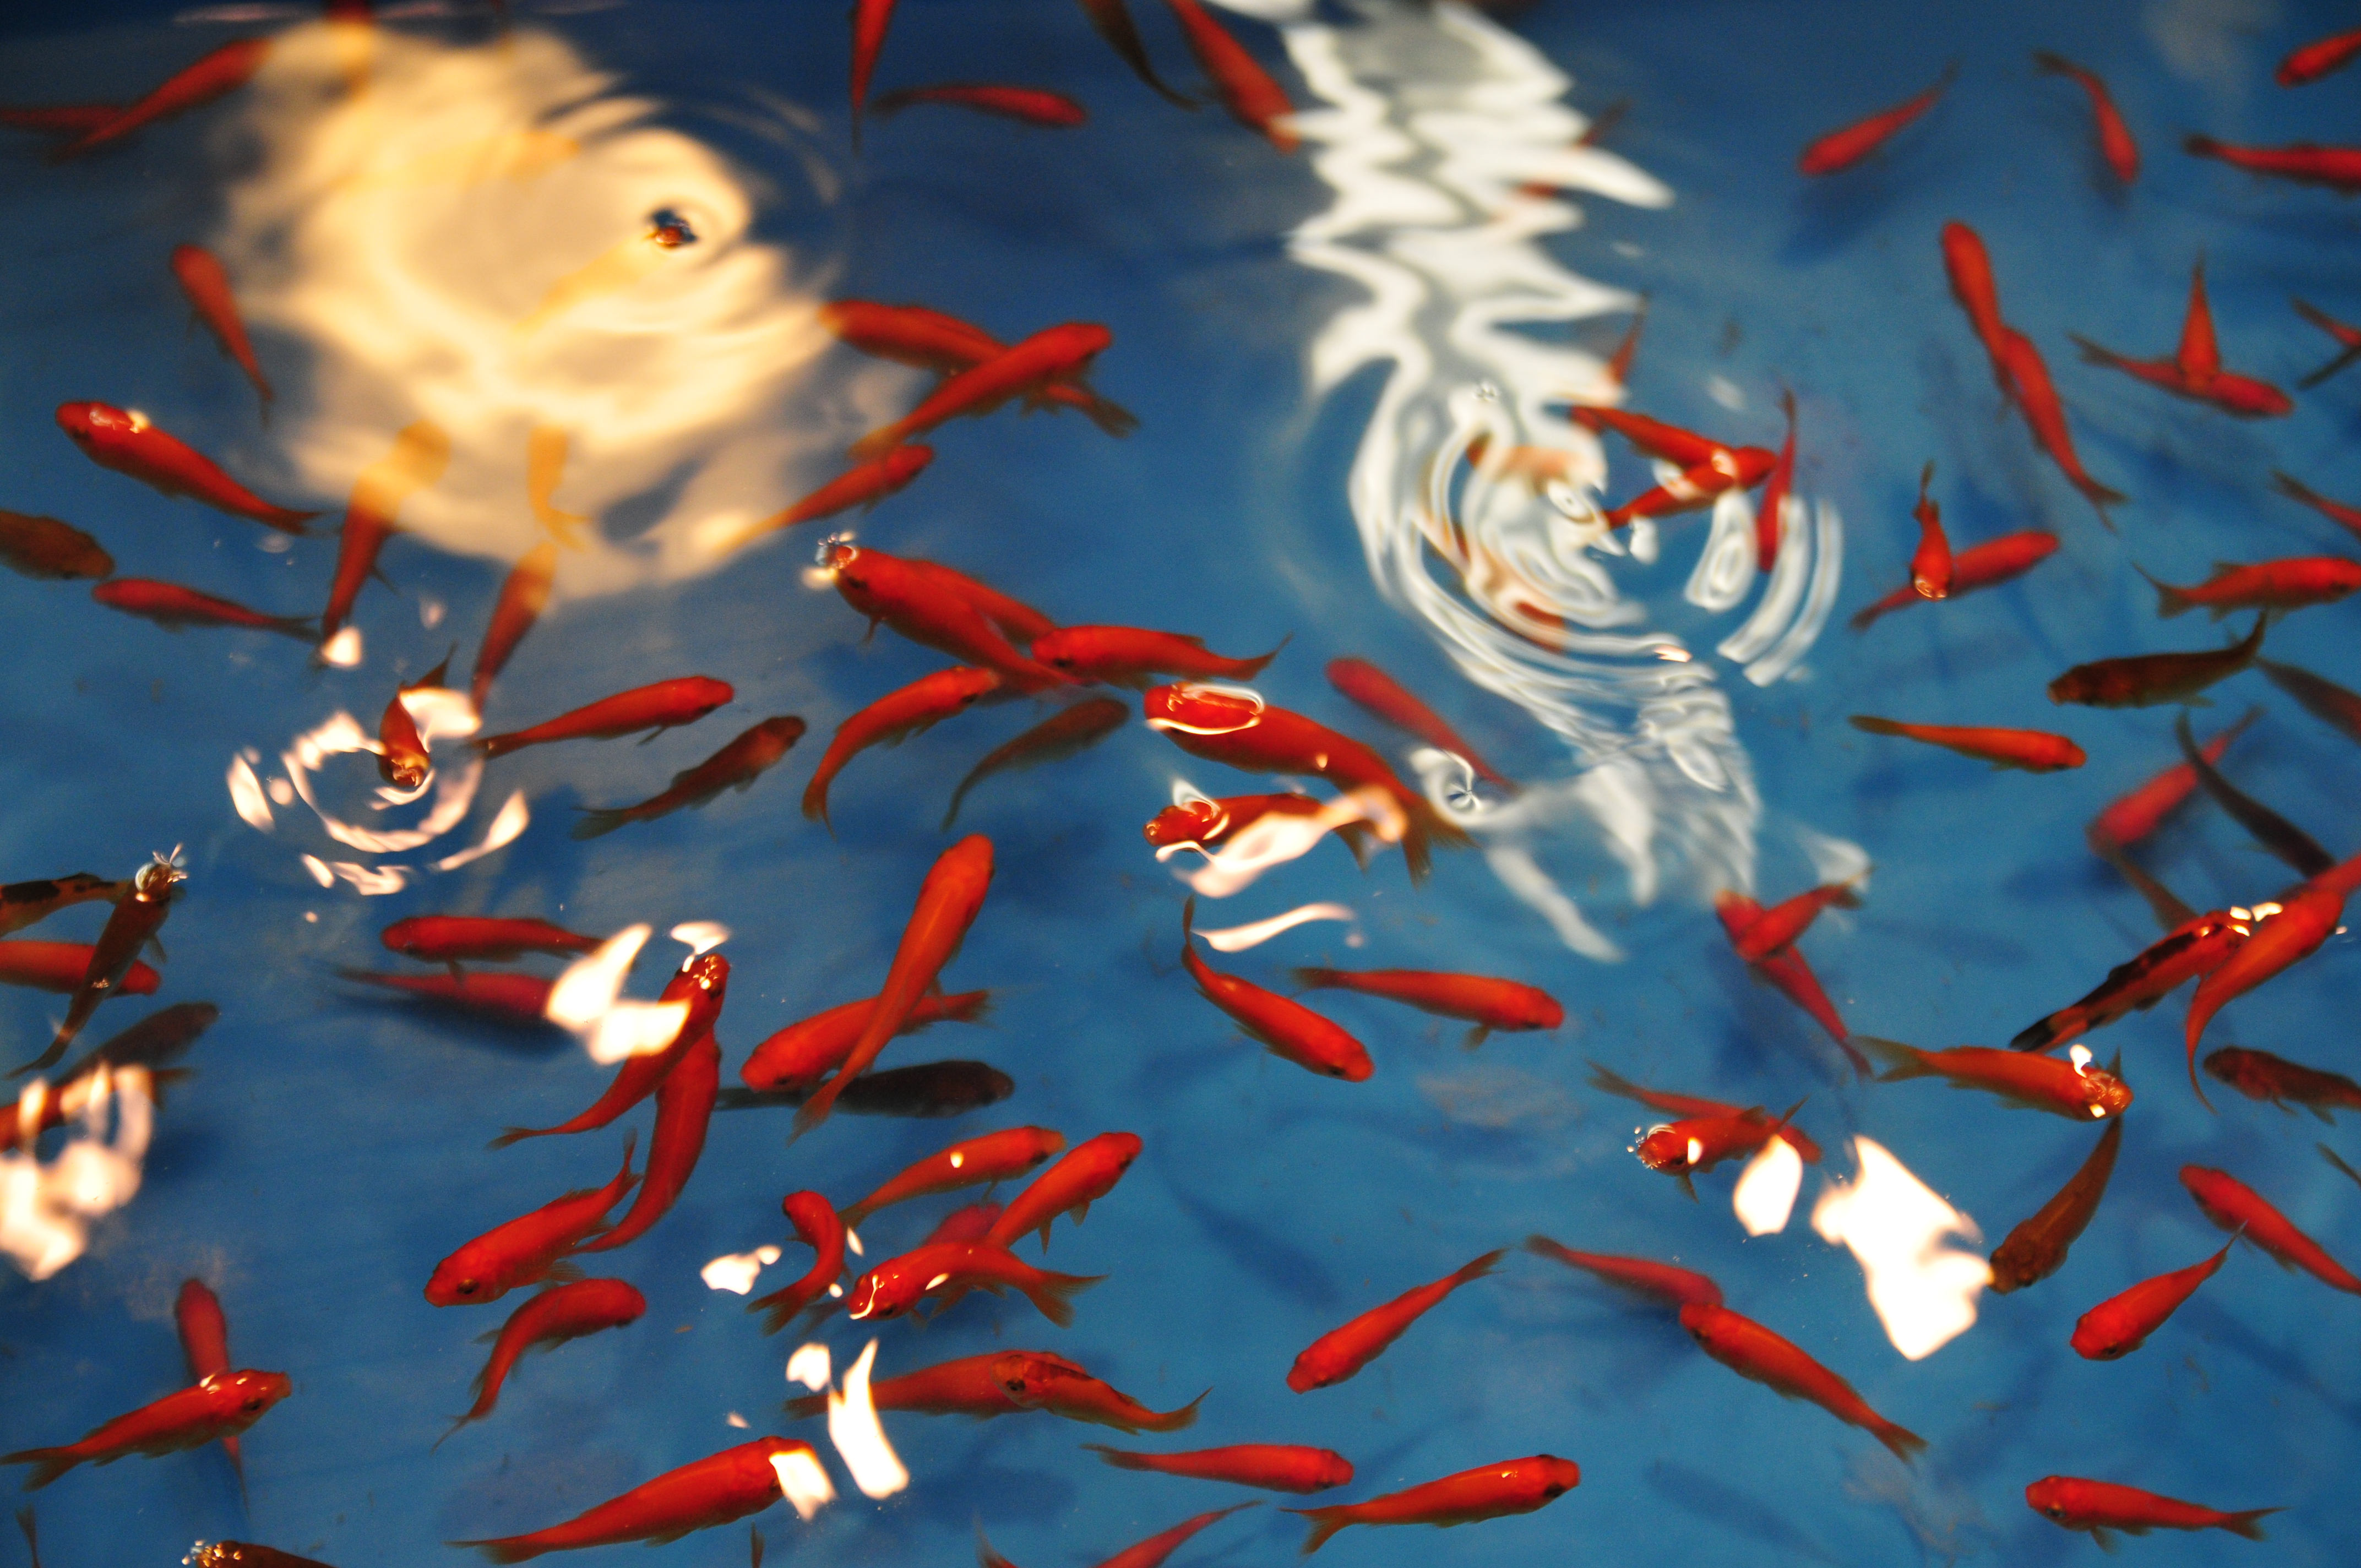 フリー画像 動物写真 魚類 金魚 金魚すくい フリー素材 画像素材なら 無料 フリー写真素材のフリーフォト